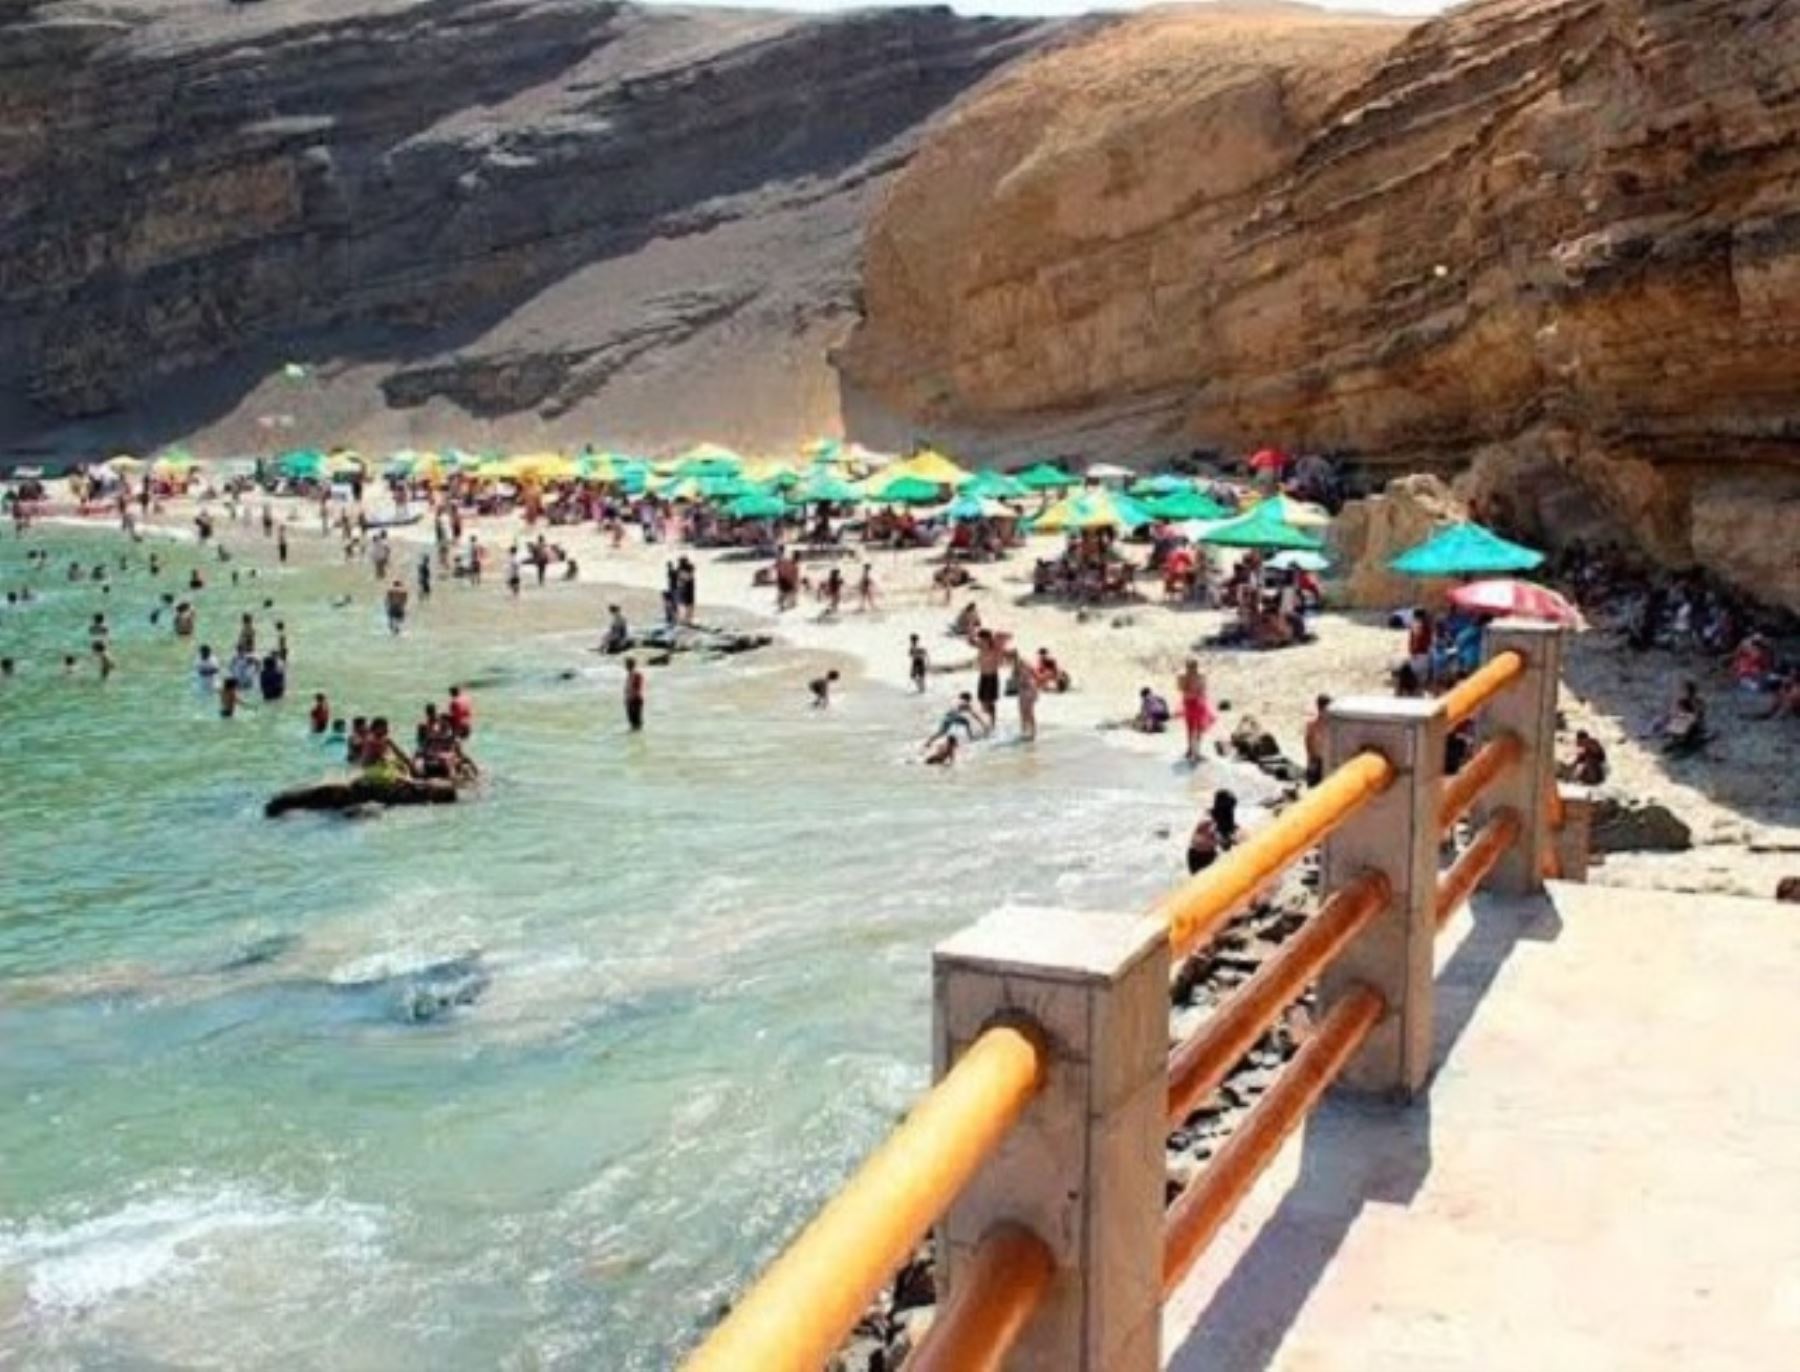 El balneario de Paracas, región Ica, espera recibir a más de 30,000 turistas durante el feriado largo por Semana Santa, la mayoría de viajeros procederán de Lima. Foto: ANDINA/difusión.